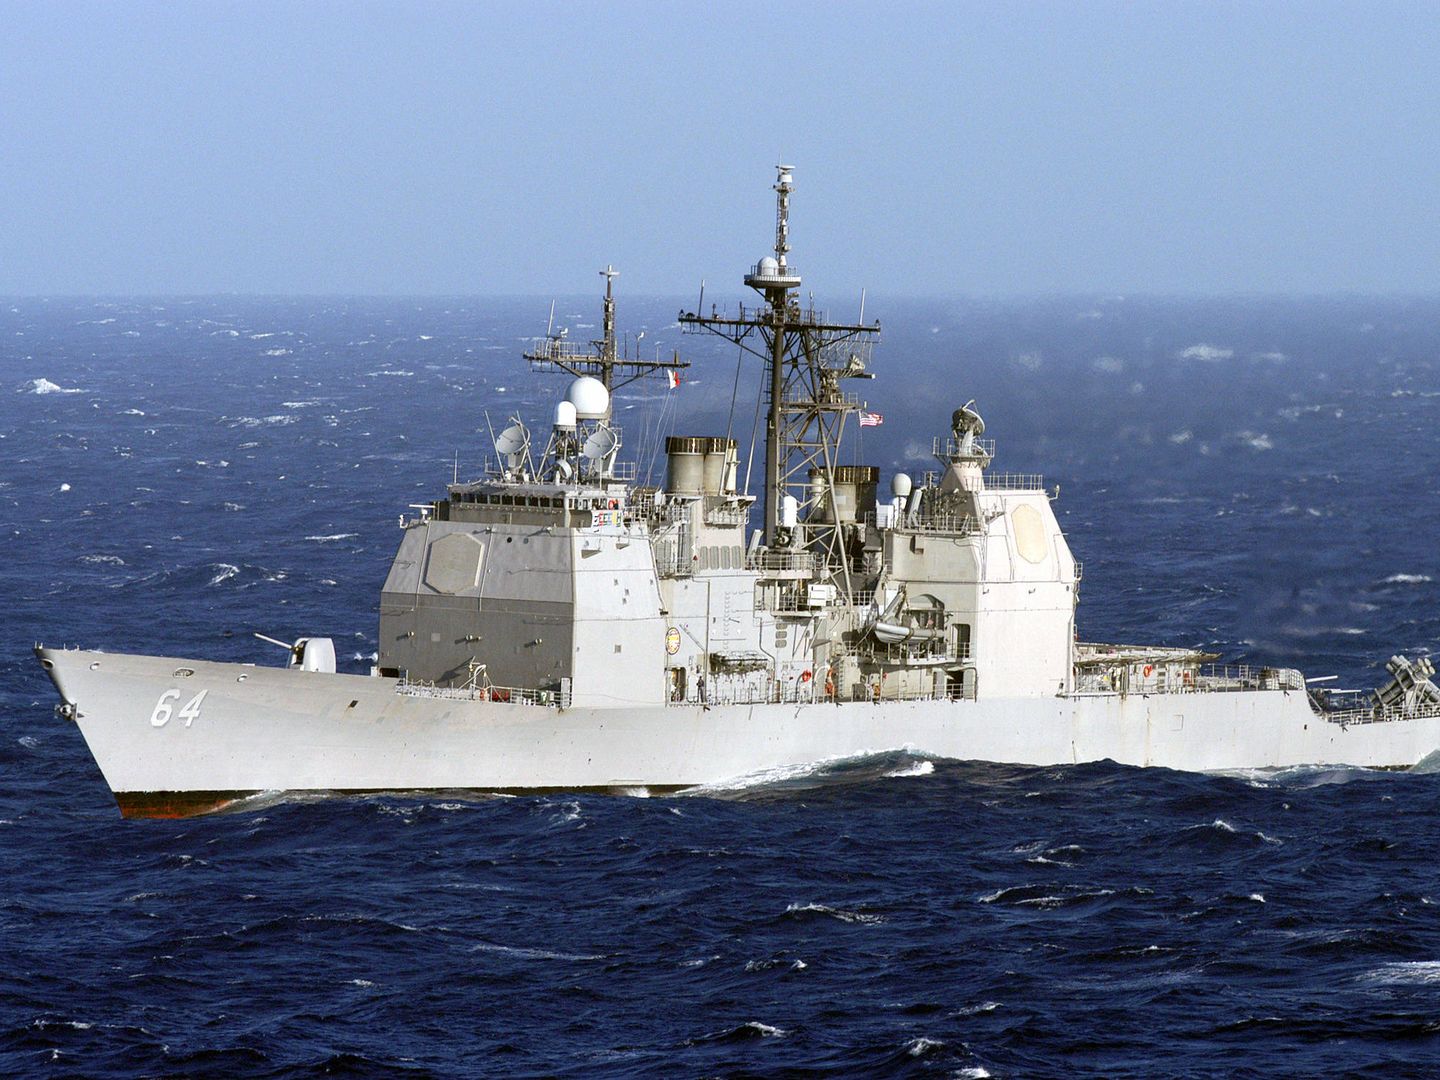 Crucero USS Gettsyburg (CG-64) de la clase Ticonderoga. (Foto: US Navy)